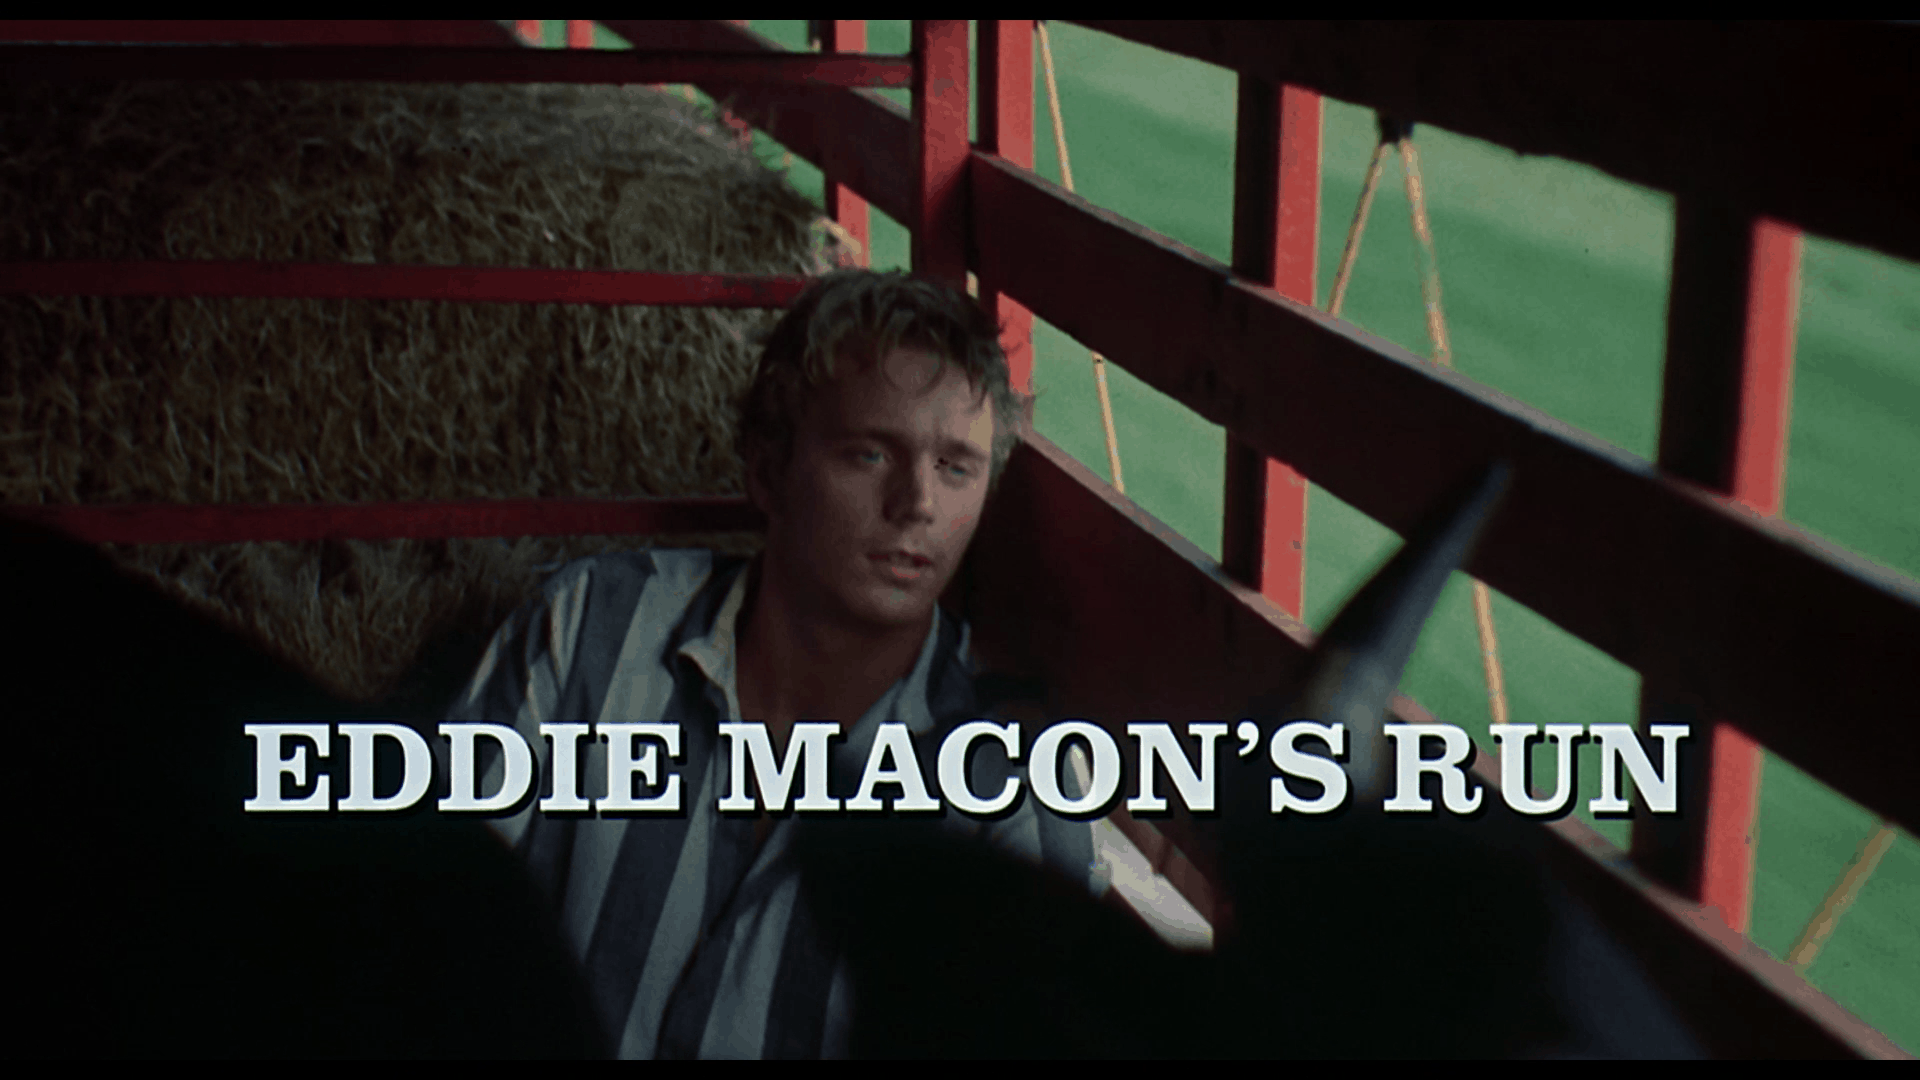 Eddie Macon's Run title card